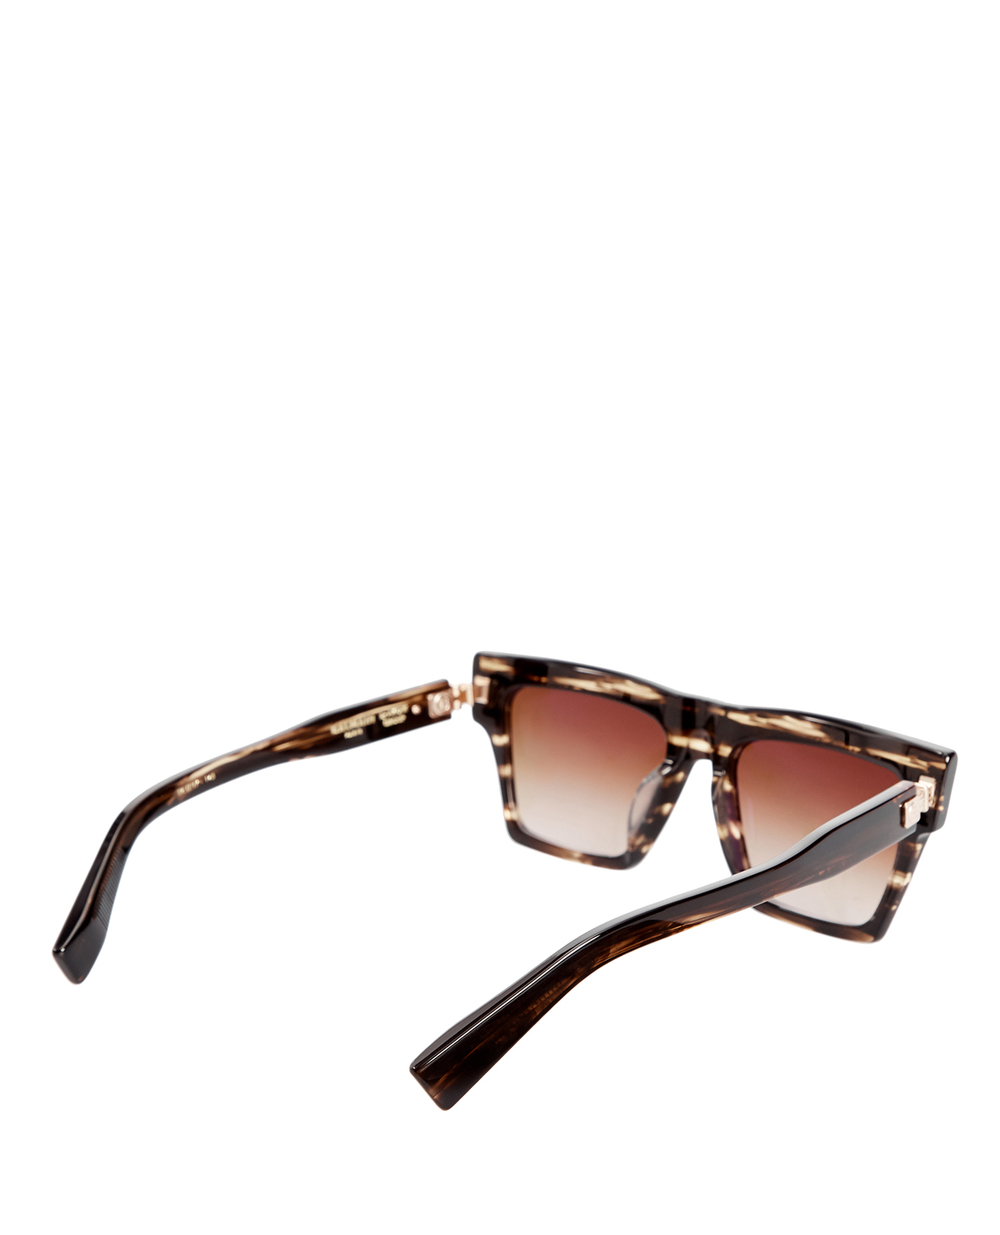 Солнцезащитные очки Balmain BPS-121B-54, коричневый цвет • Купить в интернет-магазине Kameron